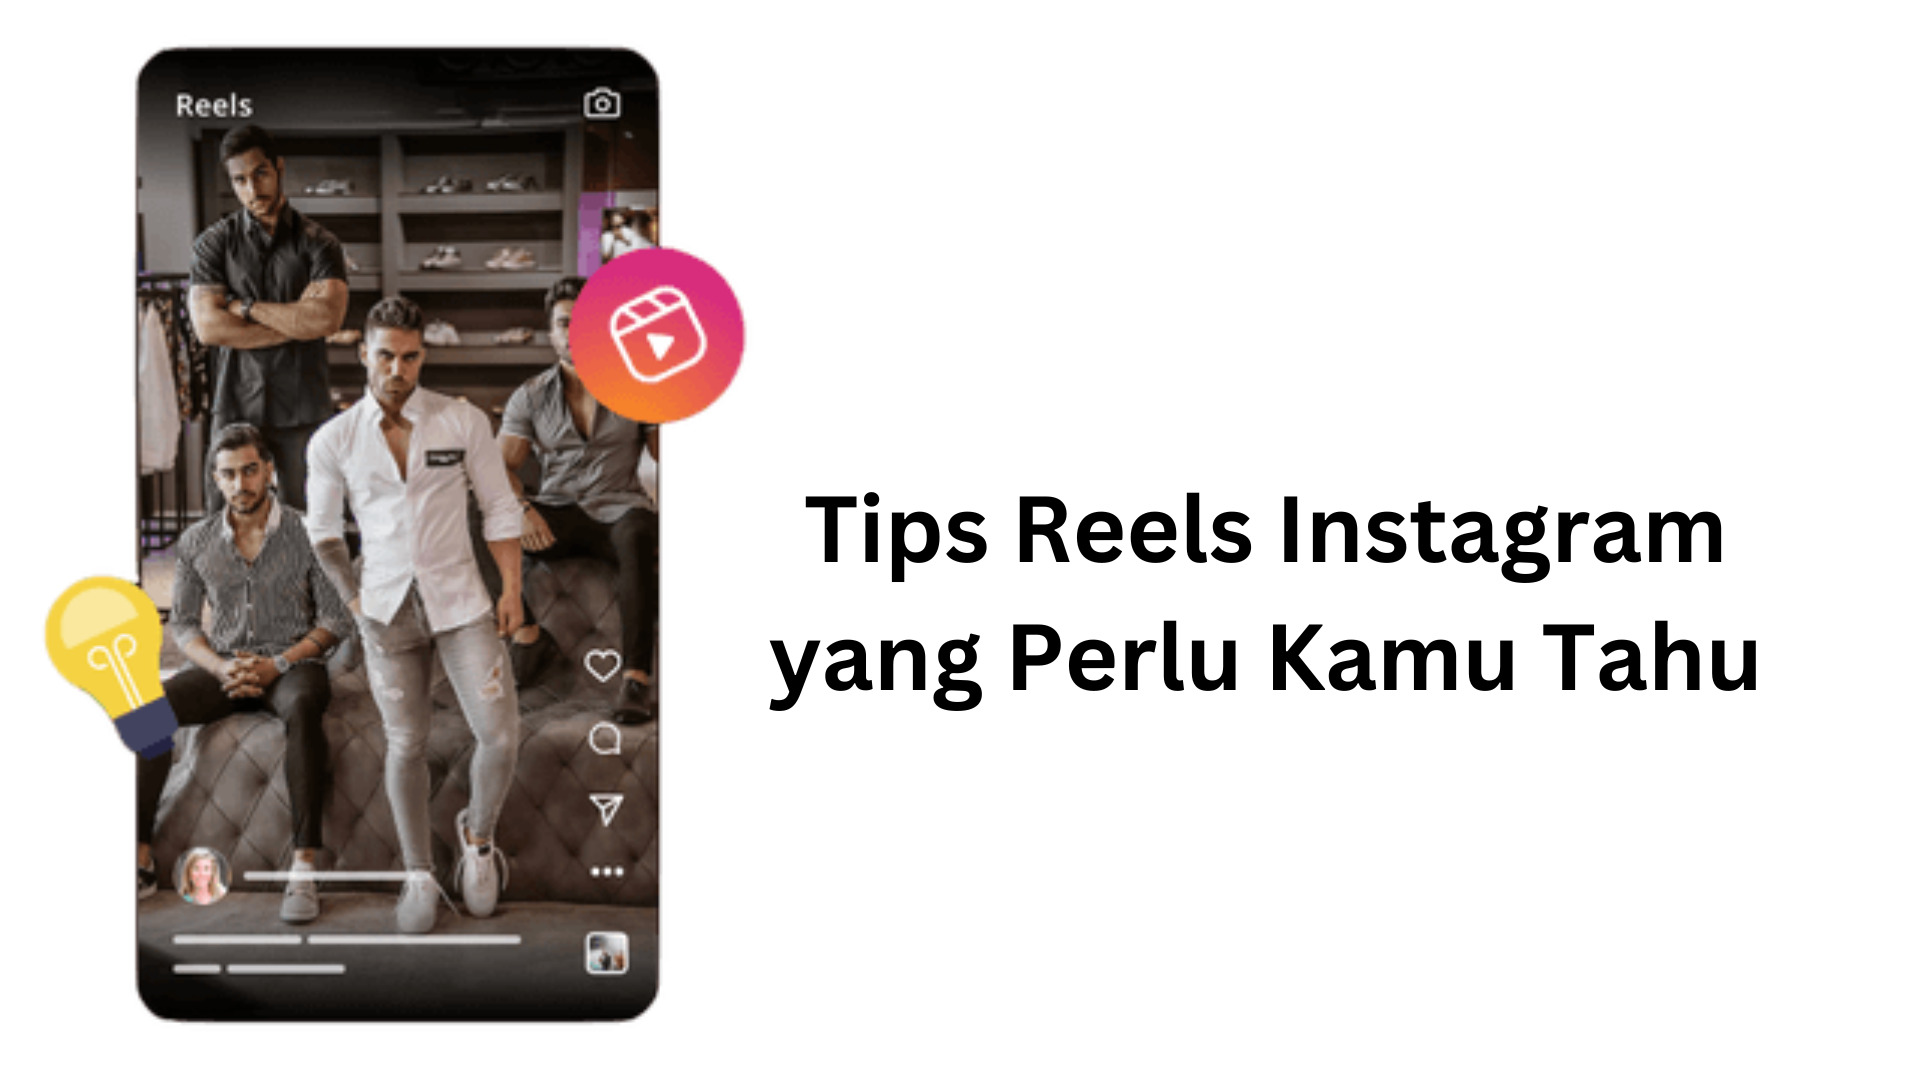 Tips Reels Instagram yang Perlu Kamu Tahu